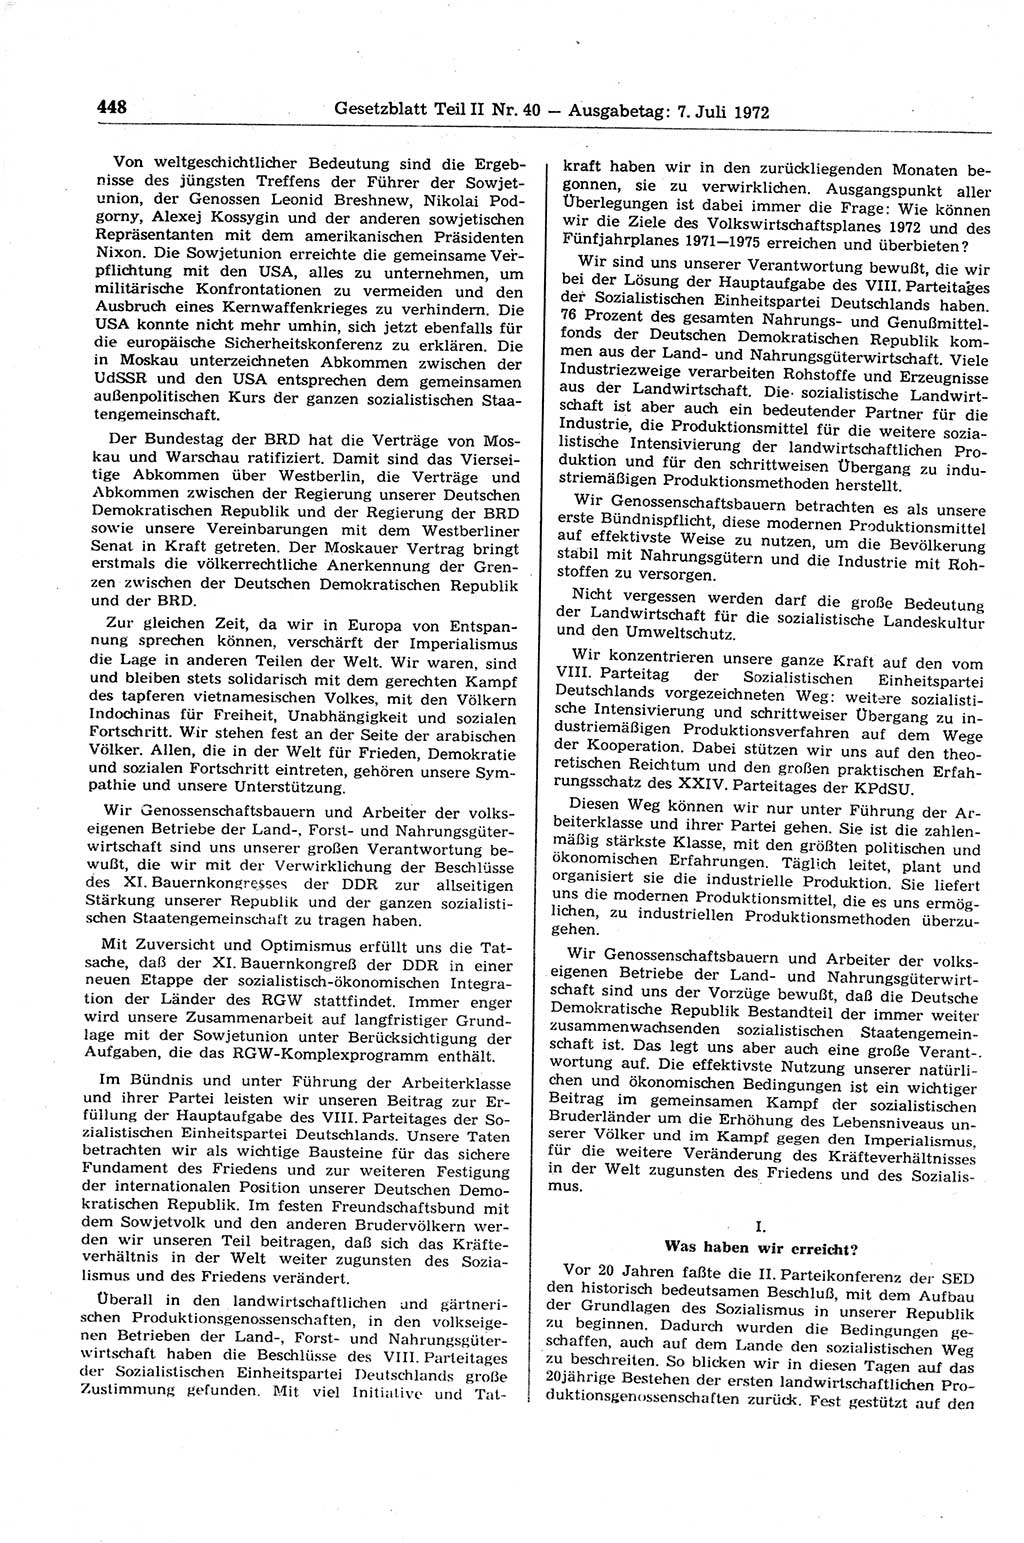 Gesetzblatt (GBl.) der Deutschen Demokratischen Republik (DDR) Teil ⅠⅠ 1972, Seite 448 (GBl. DDR ⅠⅠ 1972, S. 448)